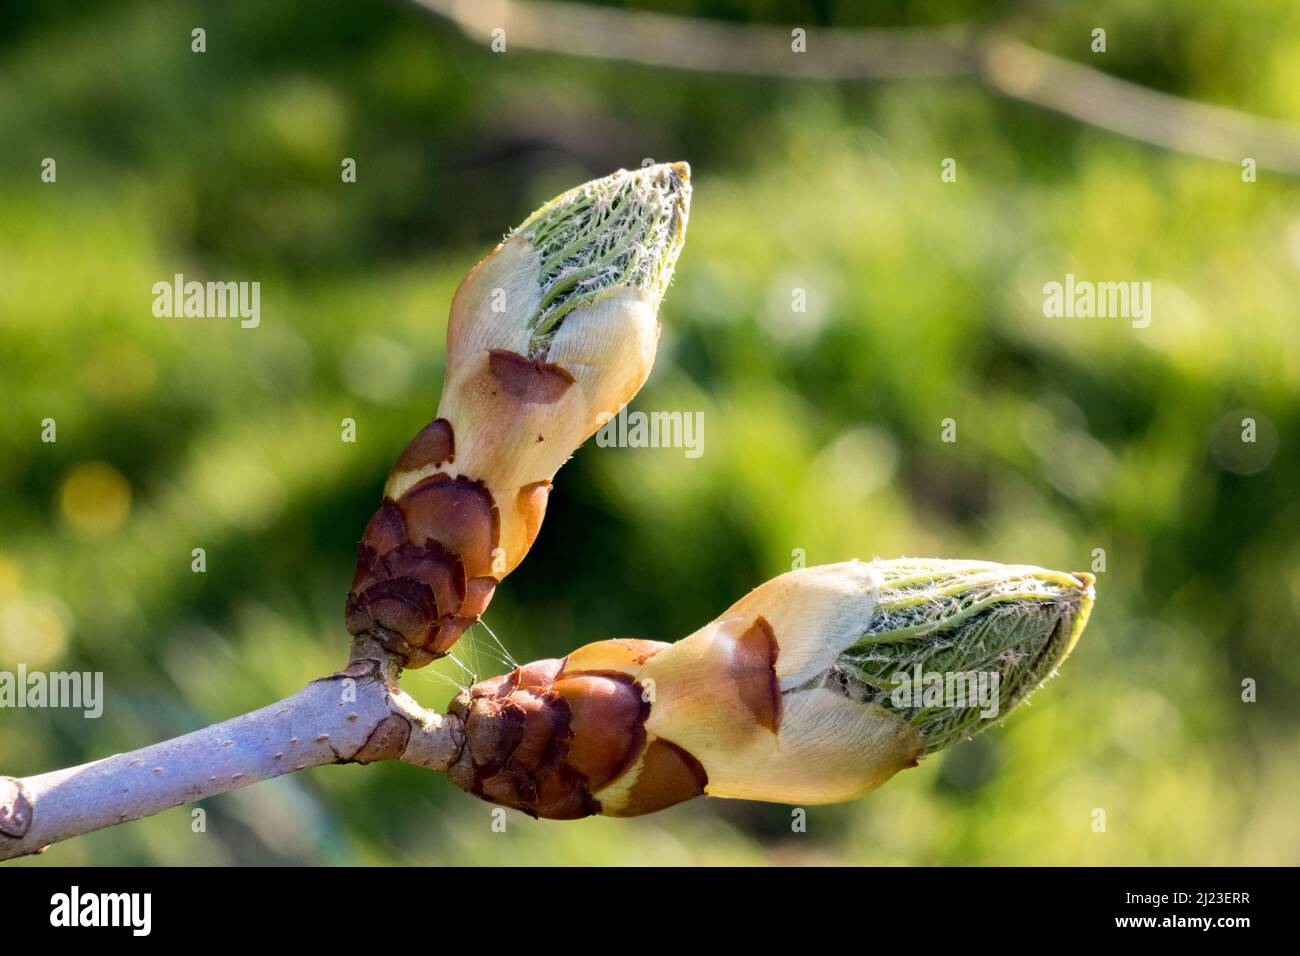 Regno Unito, Inghilterra, Devonshire. Un germoglio appiccicoso dell'albero del cavallo che si apre in primavera. Foto Stock